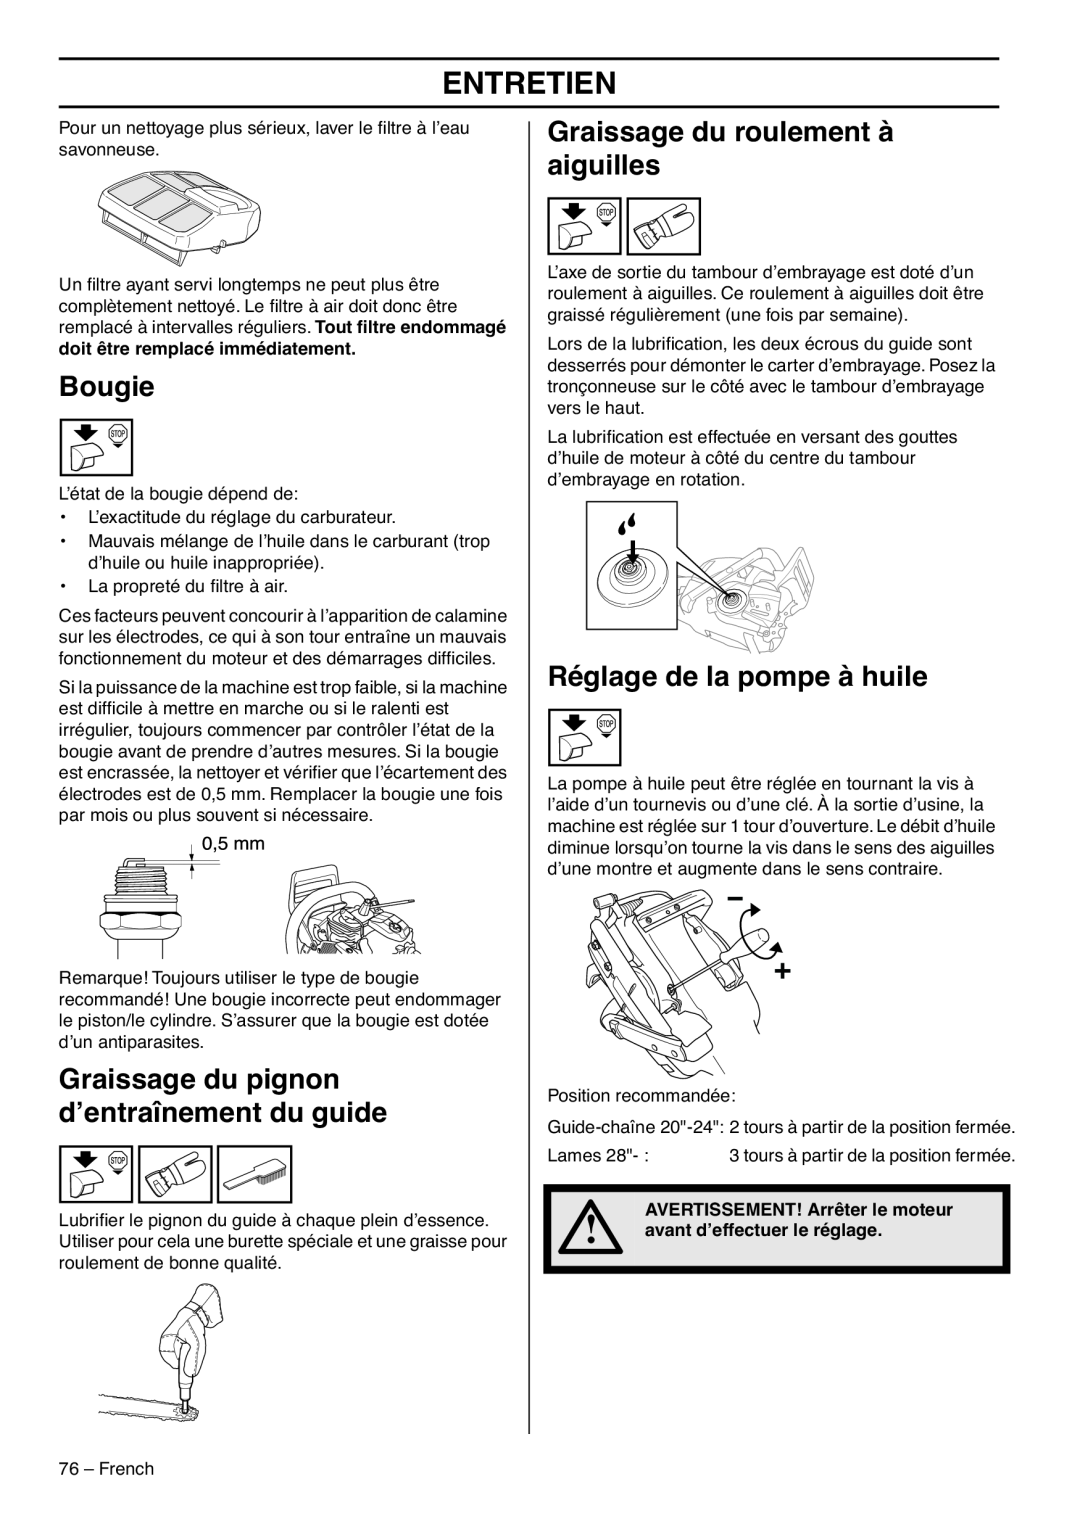 RedMax GZ7000 manual Bougie, Graissage du pignon d’entraînement du guide, Graissage du roulement à aiguilles, Entretien 